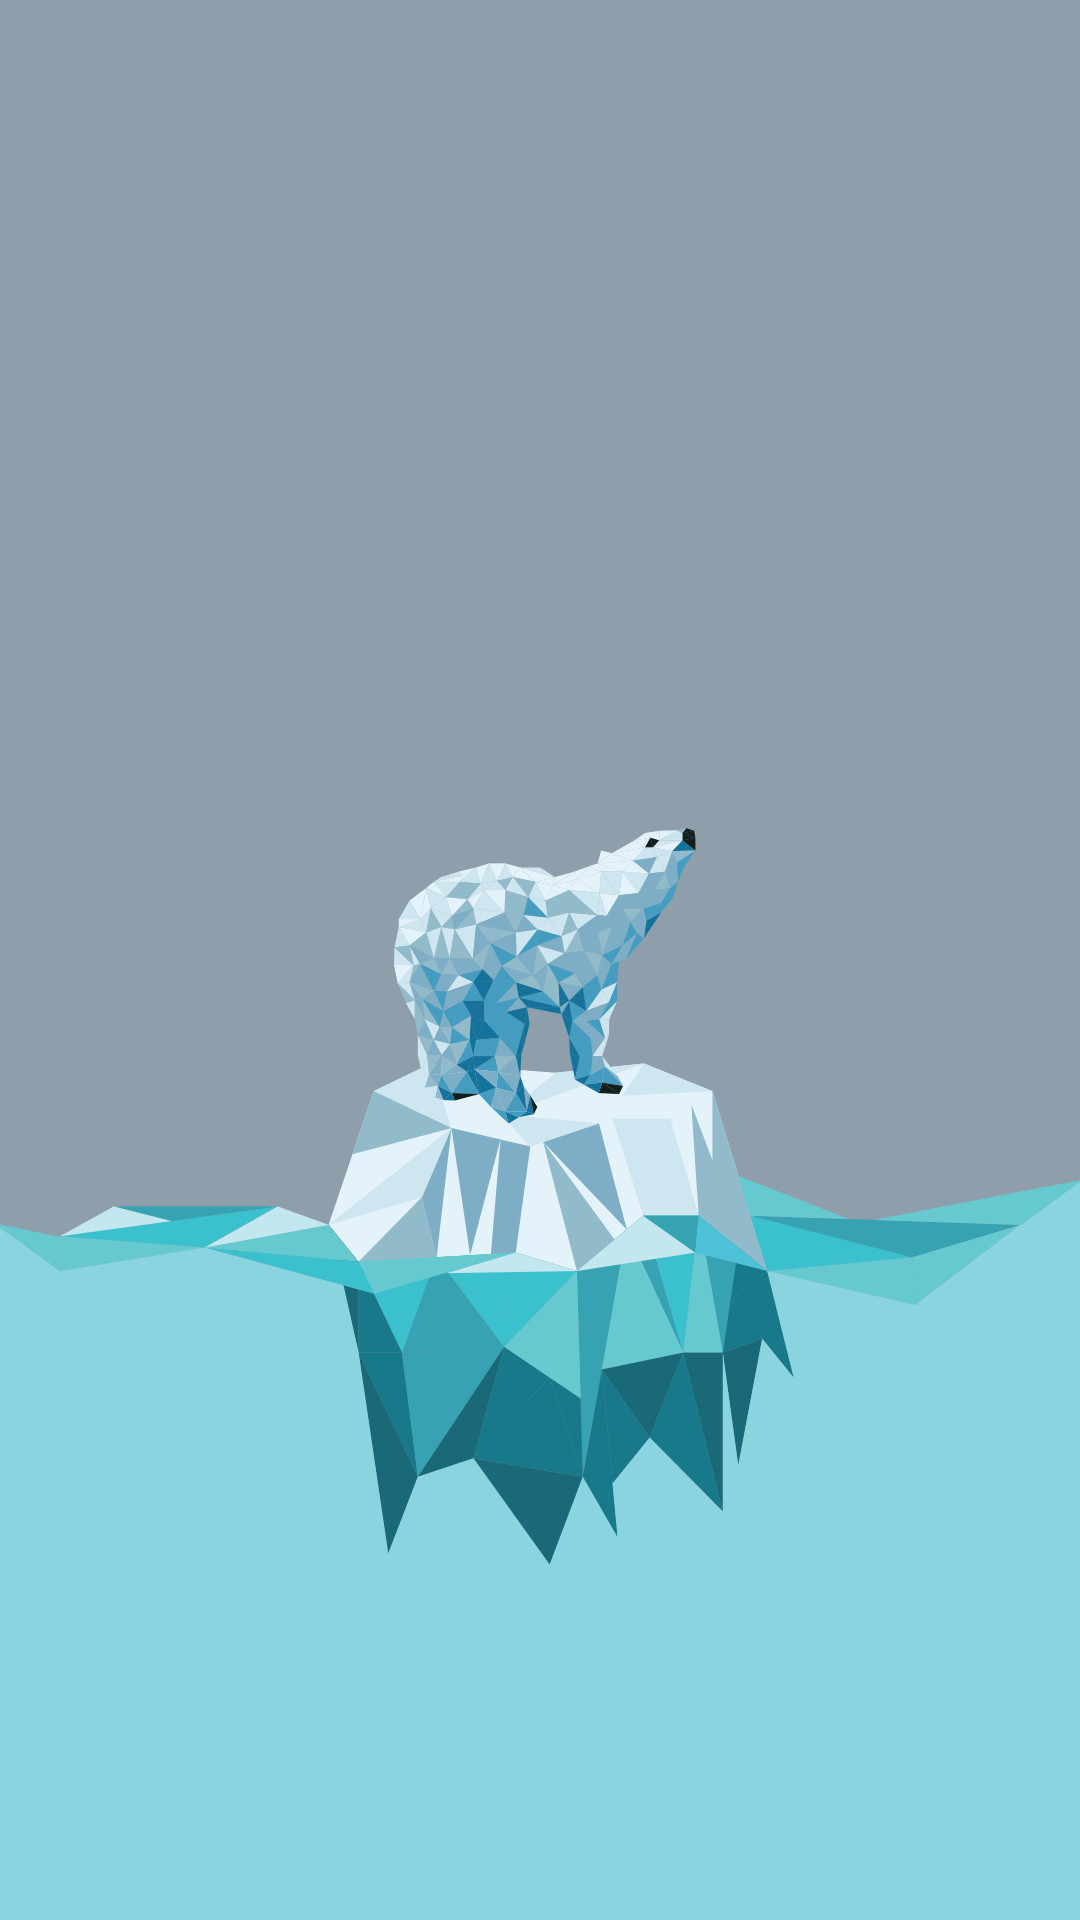 1080x1920 Minimal iPhone wallpaper â¤ polar bear